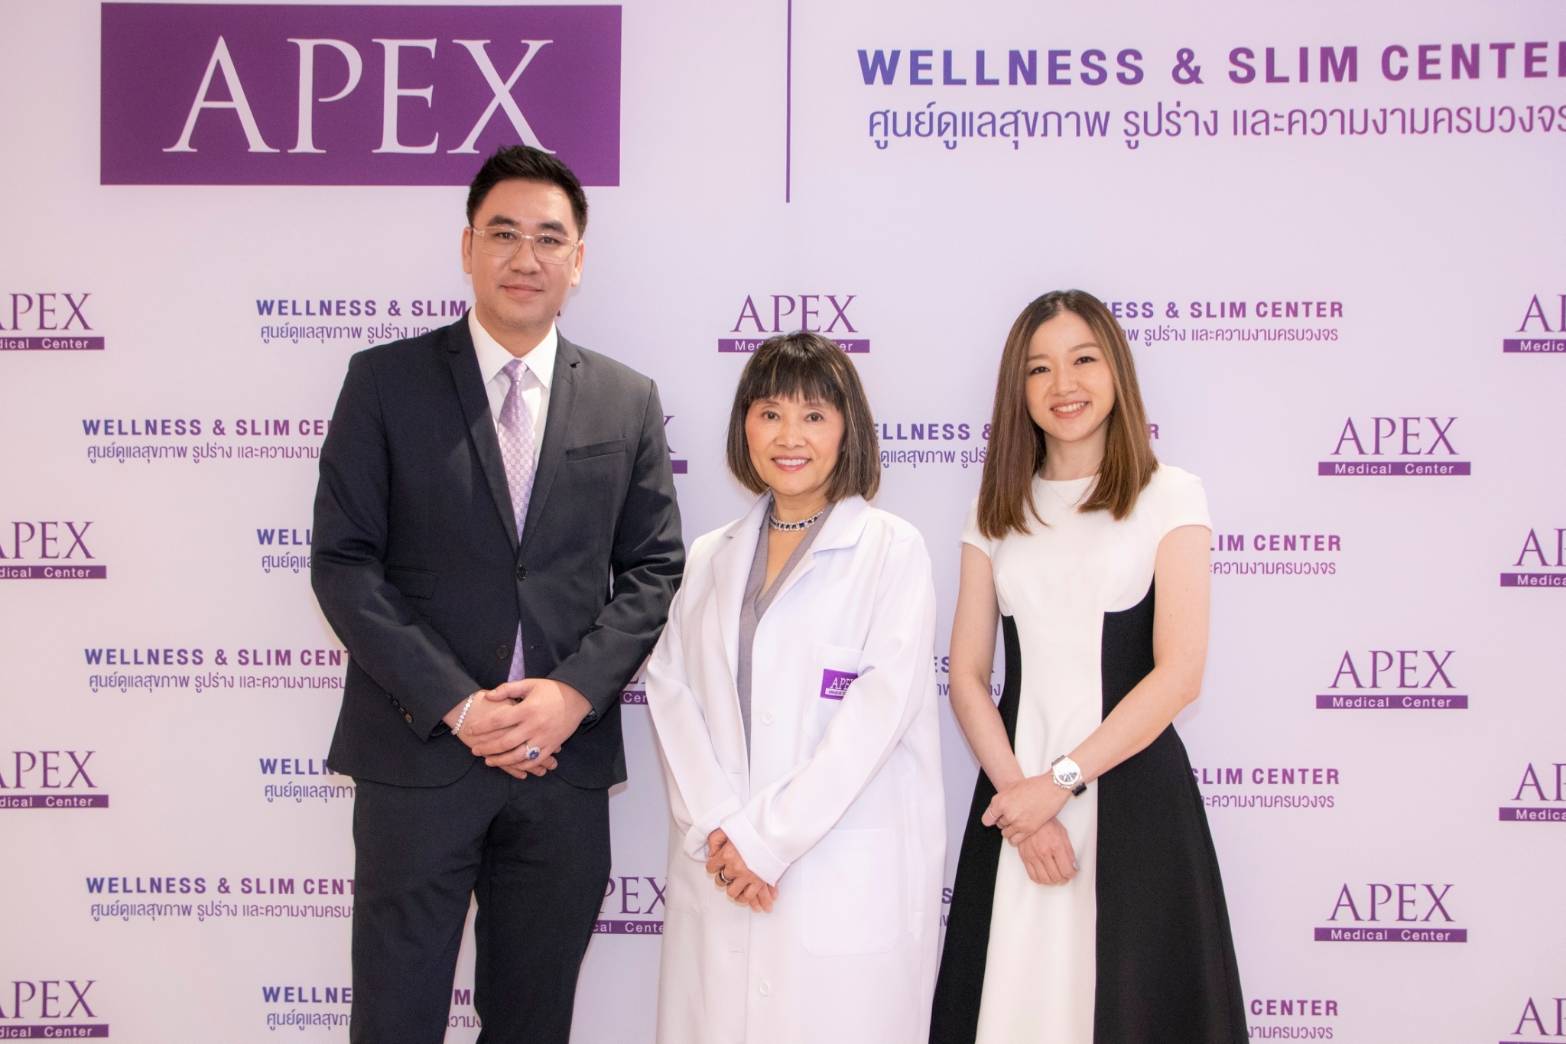 APEX Medical Center เปิด Wellness & Slim Center ชูนวัตกรรมเพื่อคนรักสุขภาพ ตอบโจทย์ผู้นำความงามแบบองค์รวม